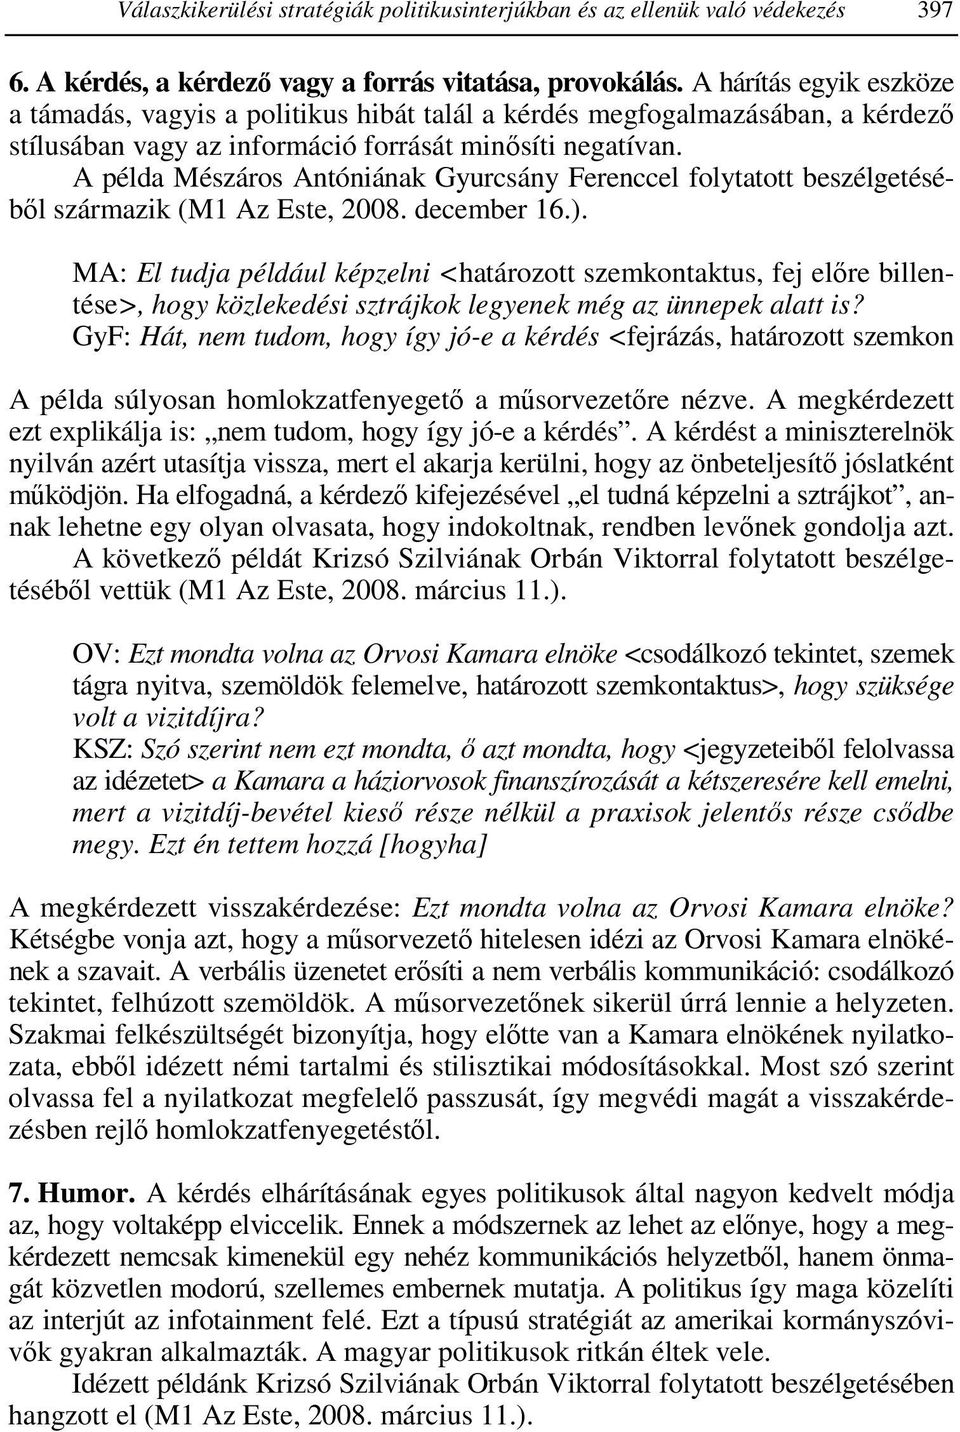 A példa Mészáros Antóniának Gyurcsány Ferenccel folytatott beszélgetéséből származik (M1 Az Este, 2008. december 16.).